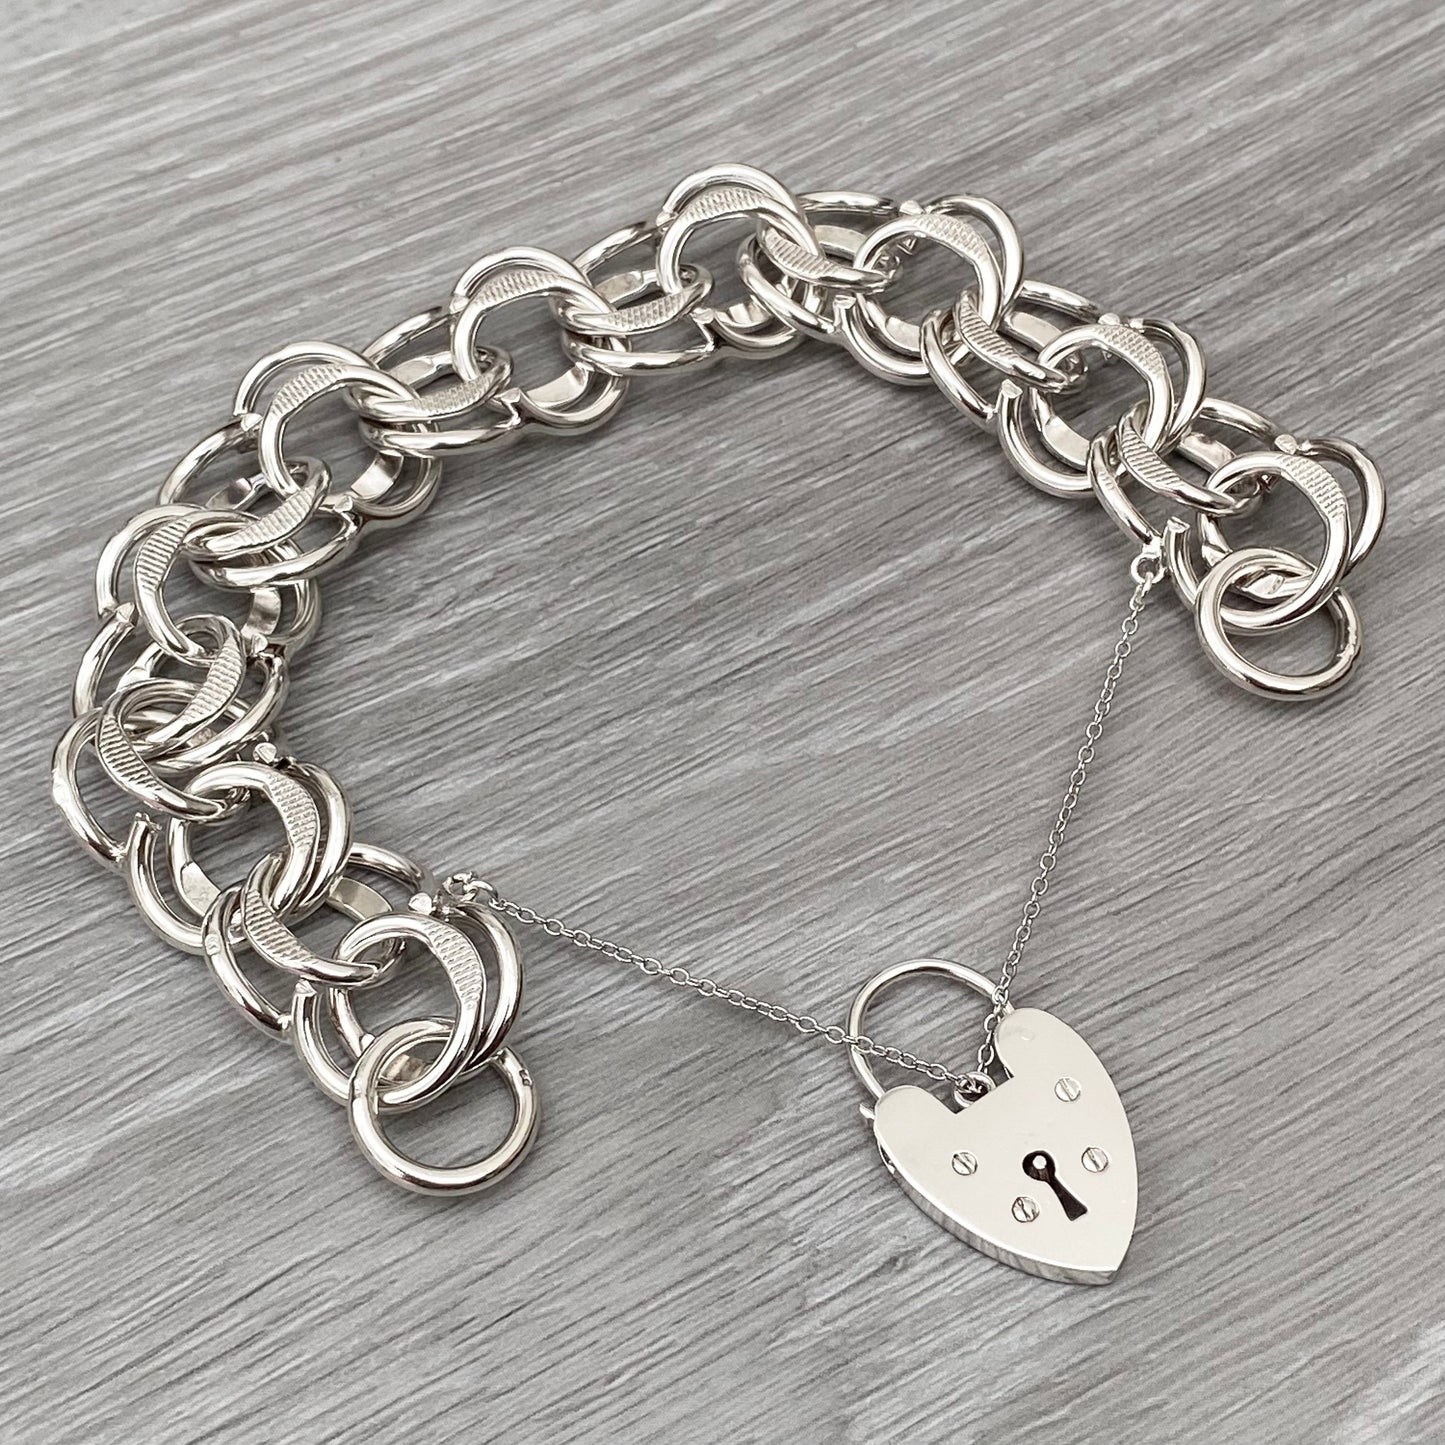 Vintage silver heart padlock fancy wide link bracelet - 1970s - 7.5 inch length